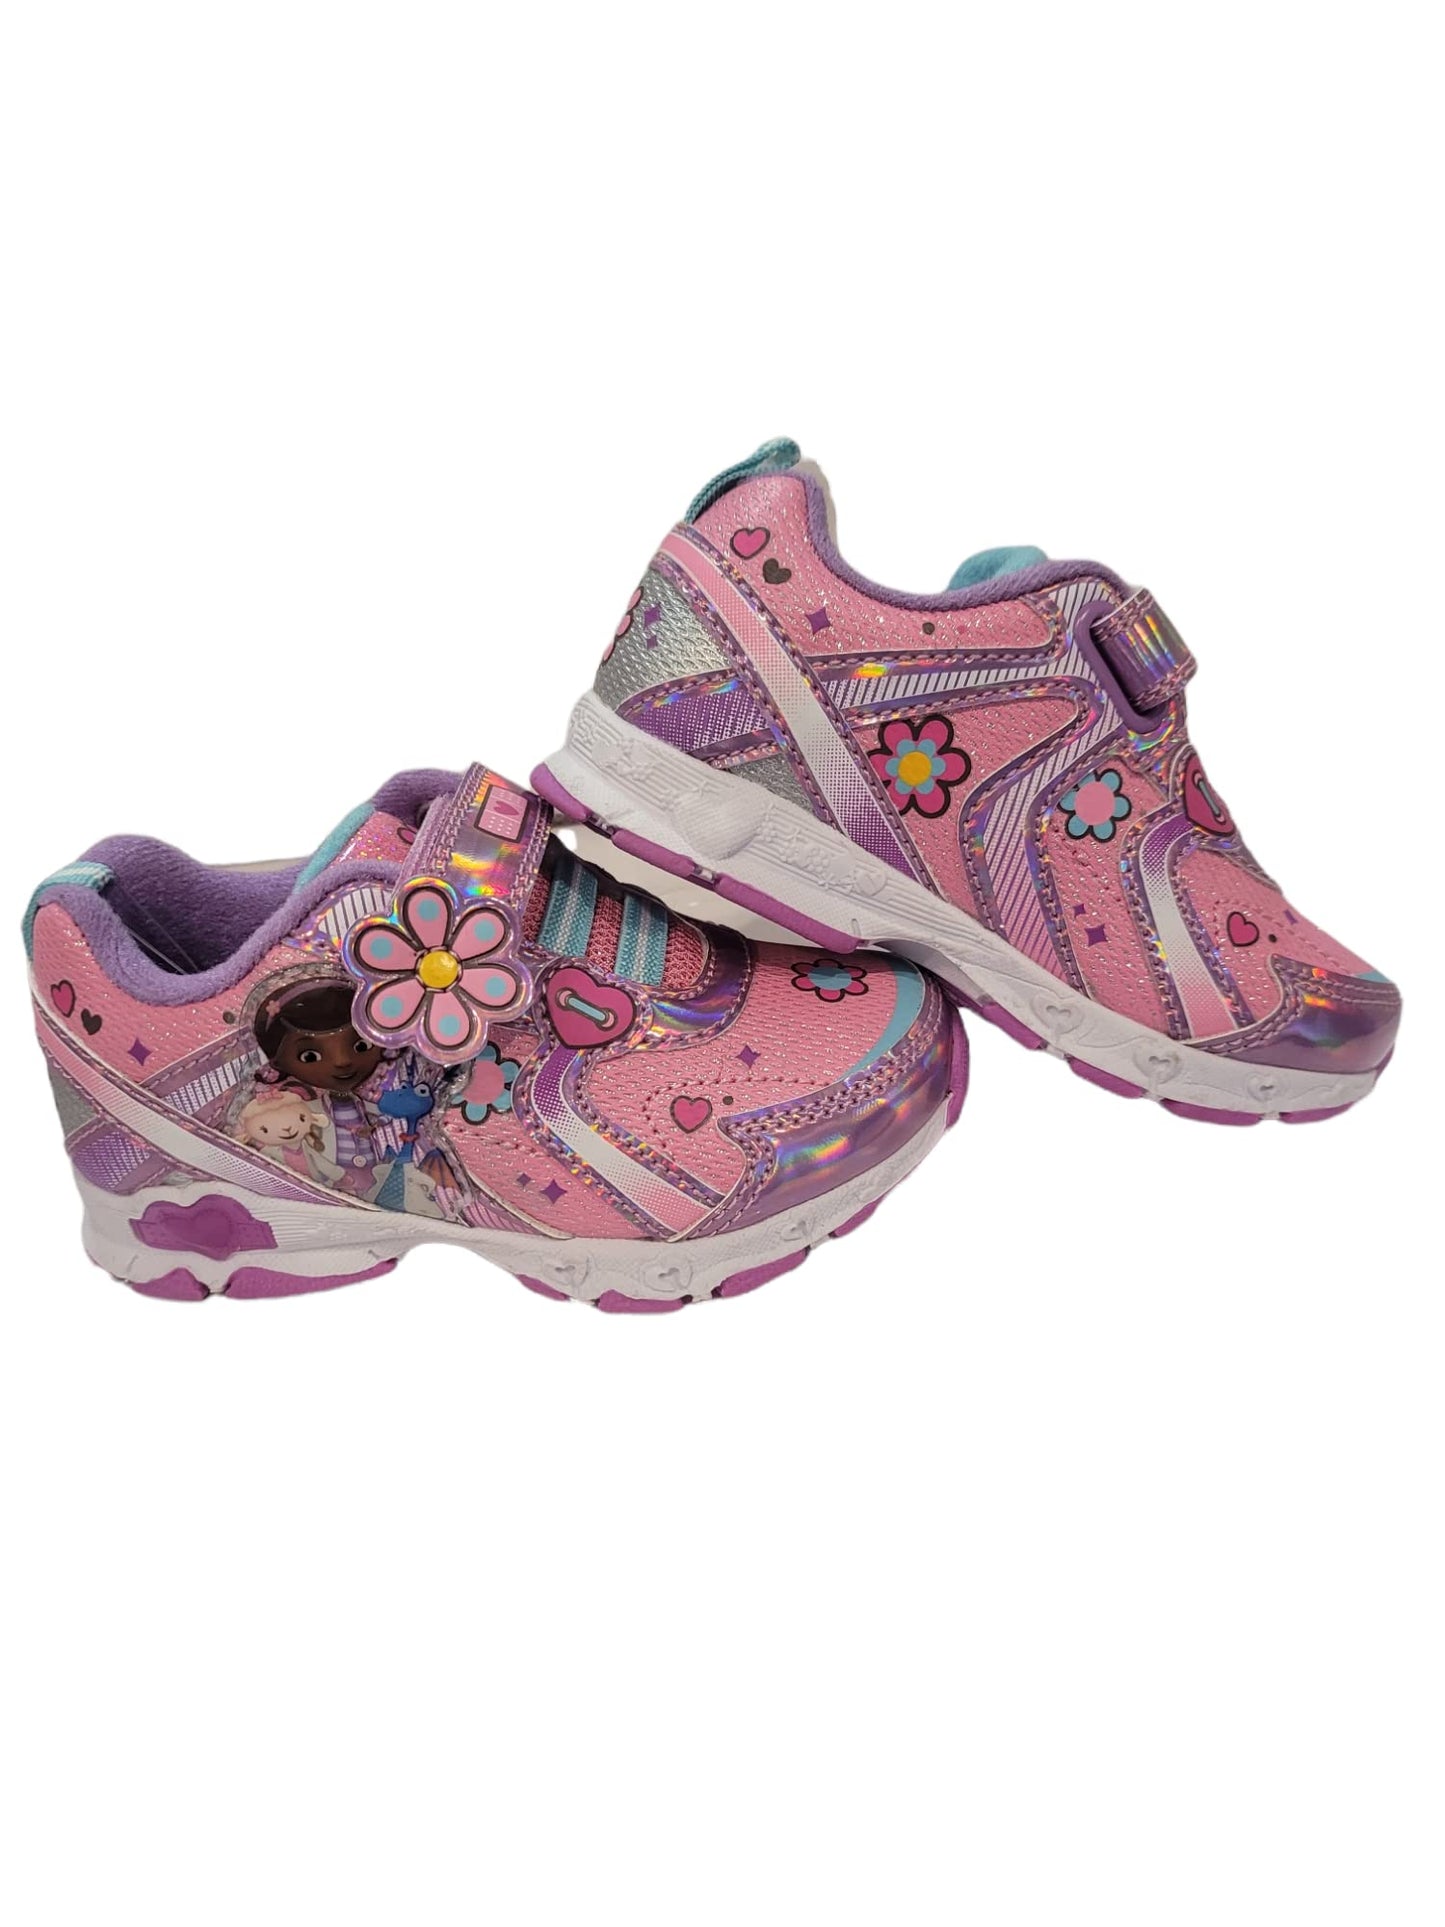 Disney Doc McStuffins Girl's Lighted Athletic Sneaker (Toddler/Little Kid)